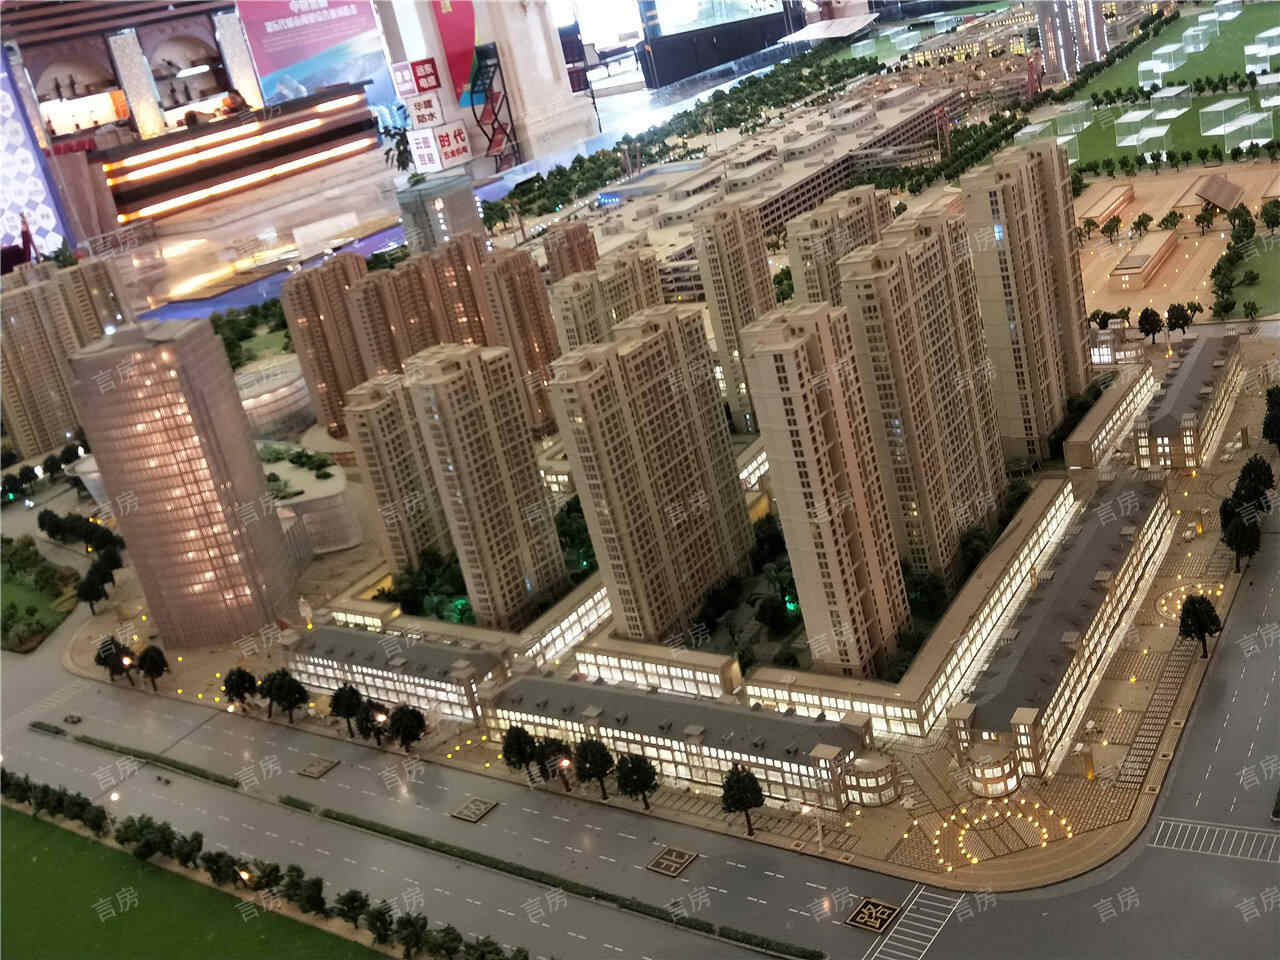 中恒蚌埠义乌国际商贸城商铺沙盘图